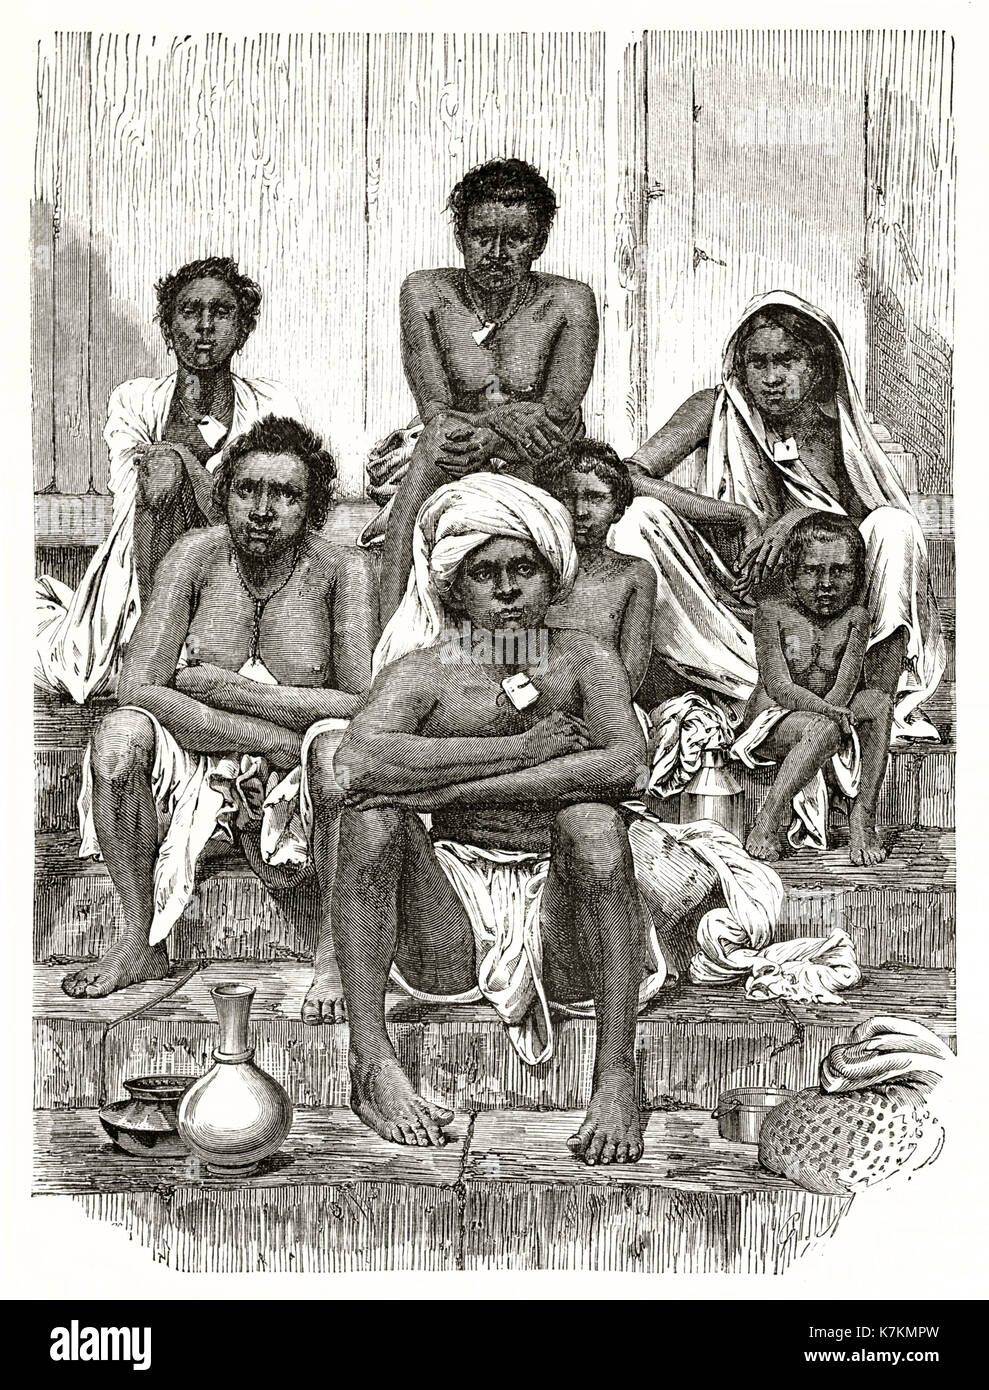 Alte Abbildung: Darstellung der Insel Reunion indigenen. Durch Mettais nach Bevan, Publ. bei Le Tour du Monde, Paris, 1862 Stockfoto